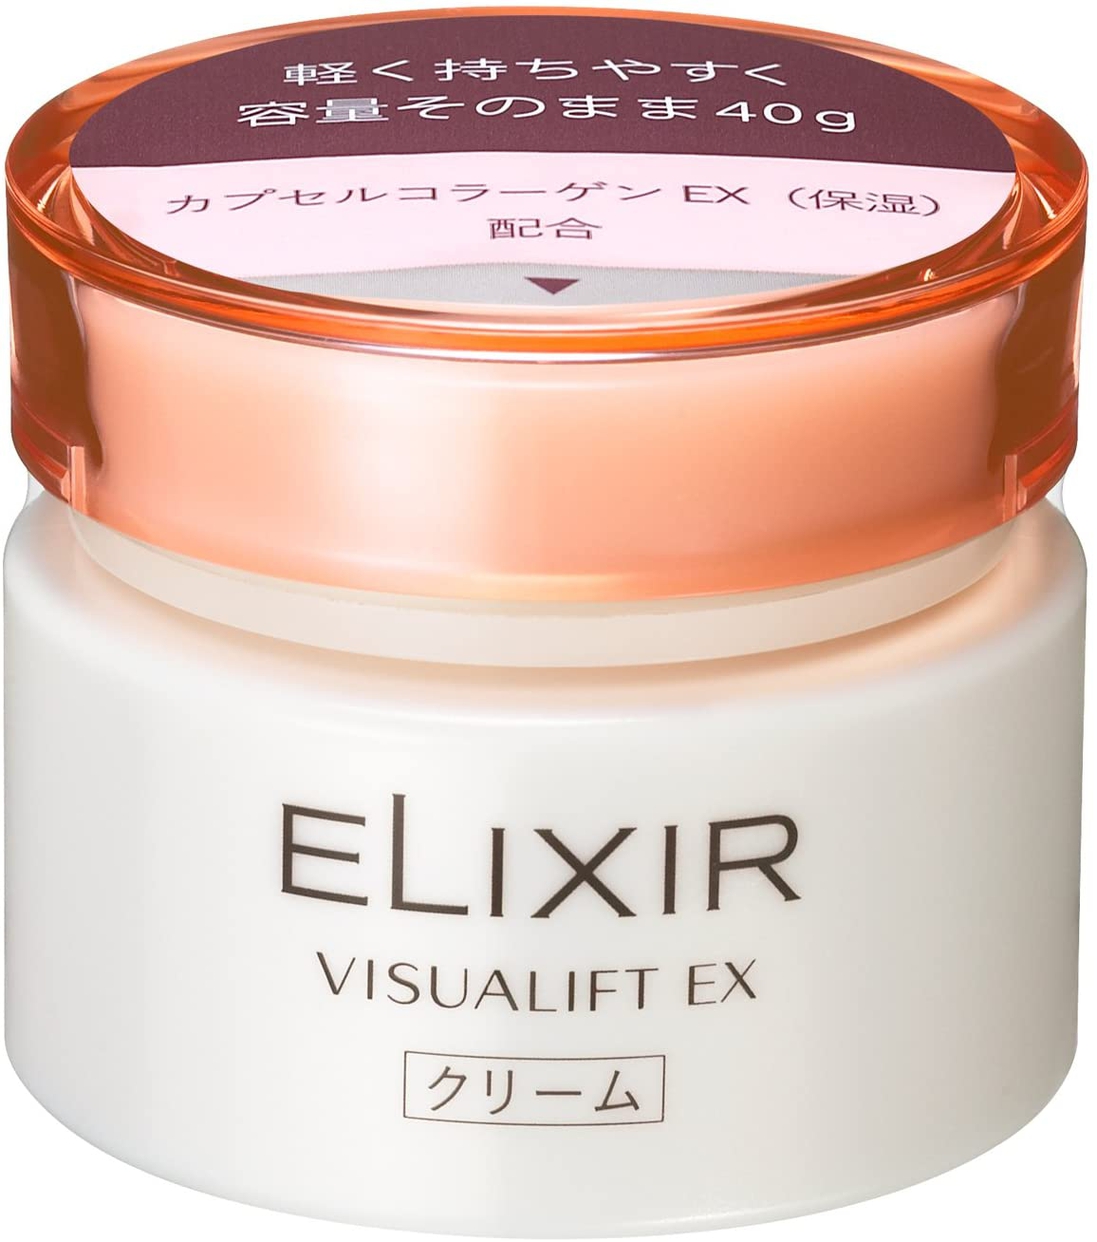 ELIXIR(エリクシール) ヴィジュアリフト EXの商品画像2 